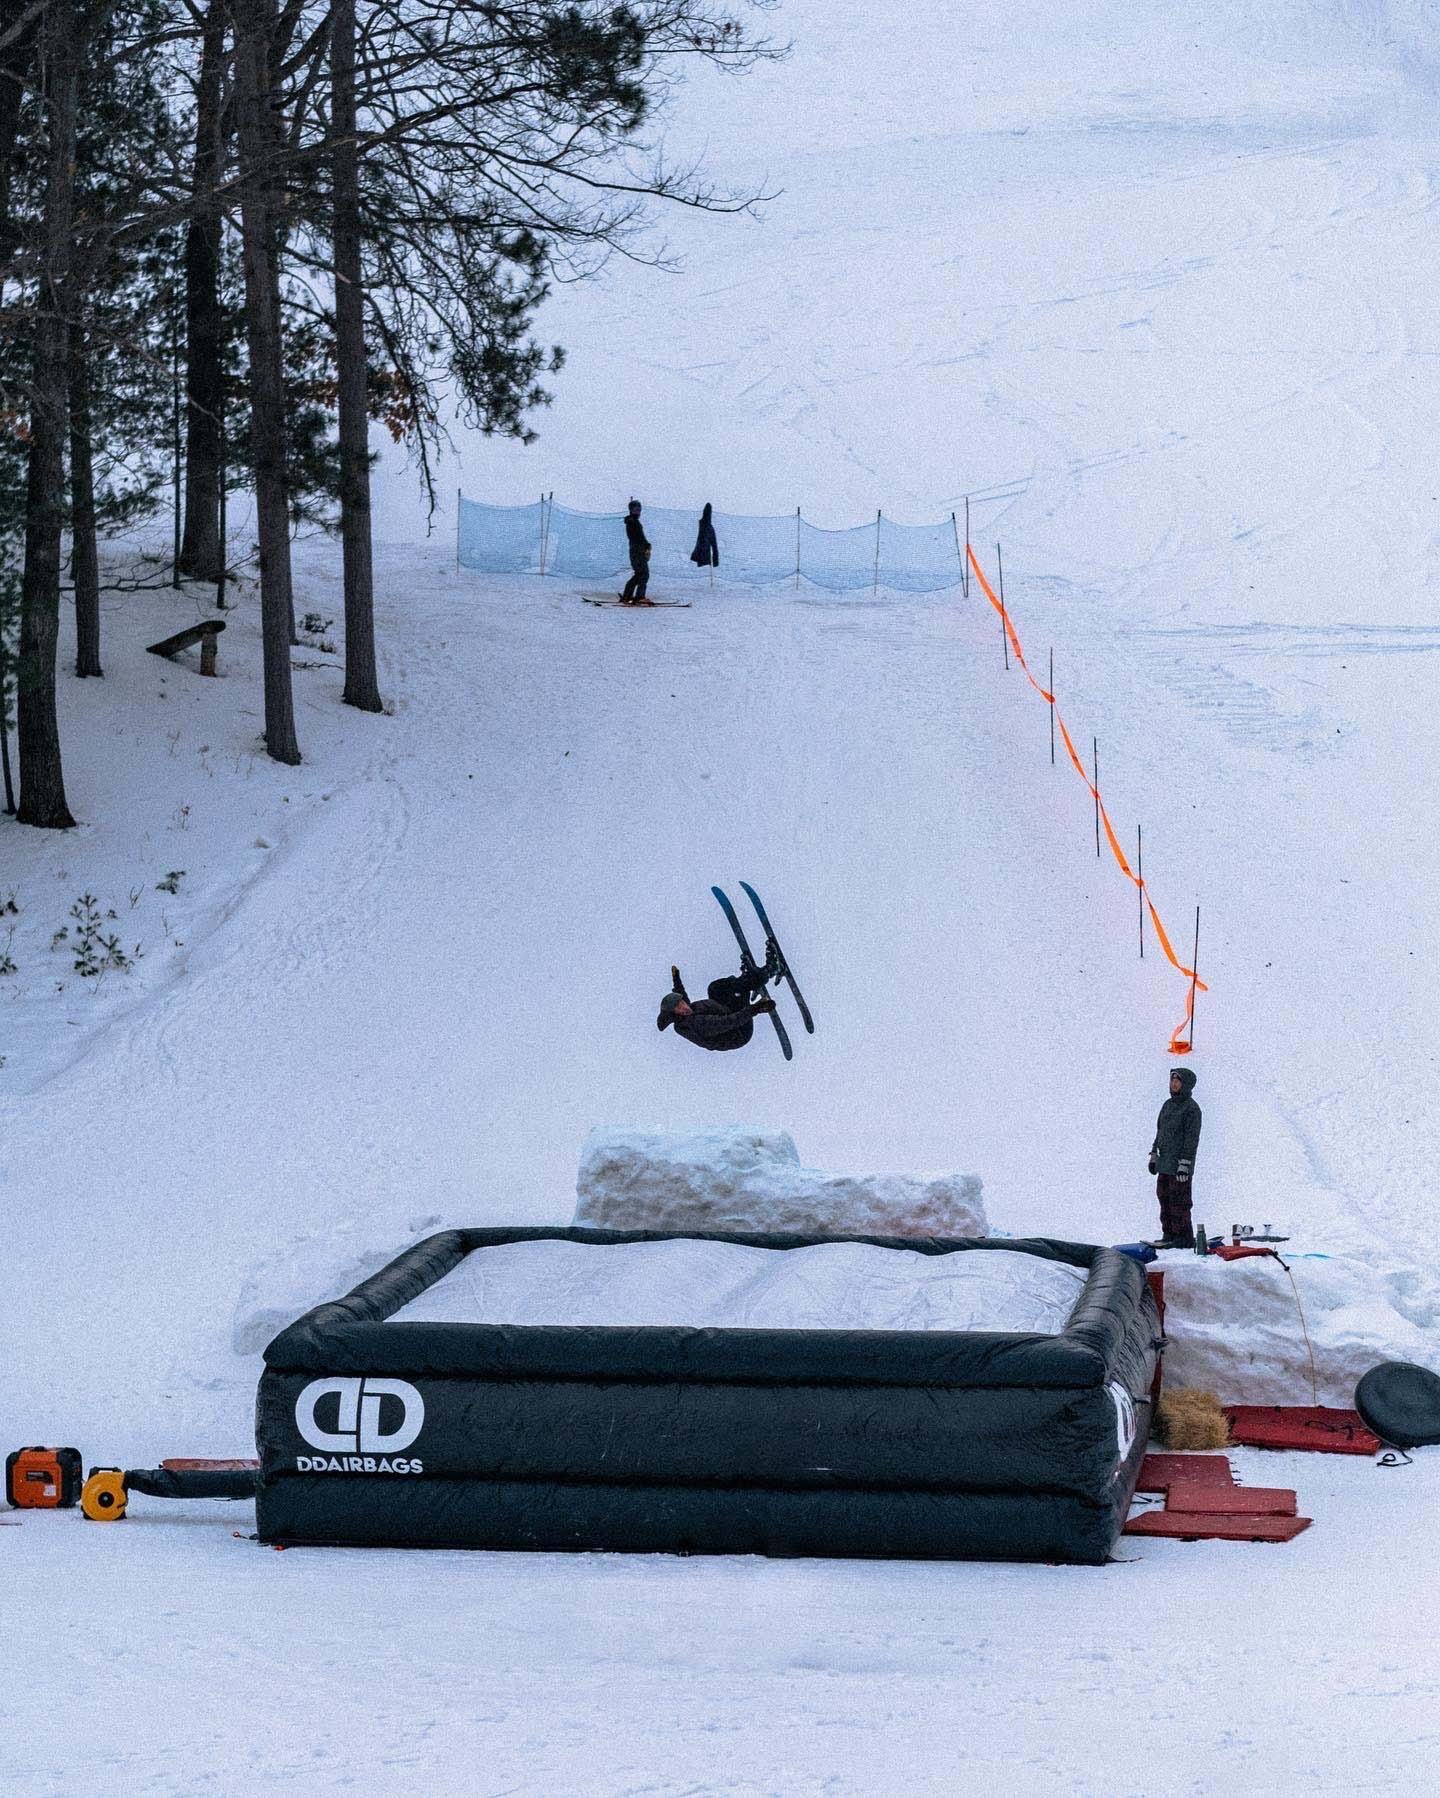 ddairbags-ski-snowboard-06.jpg